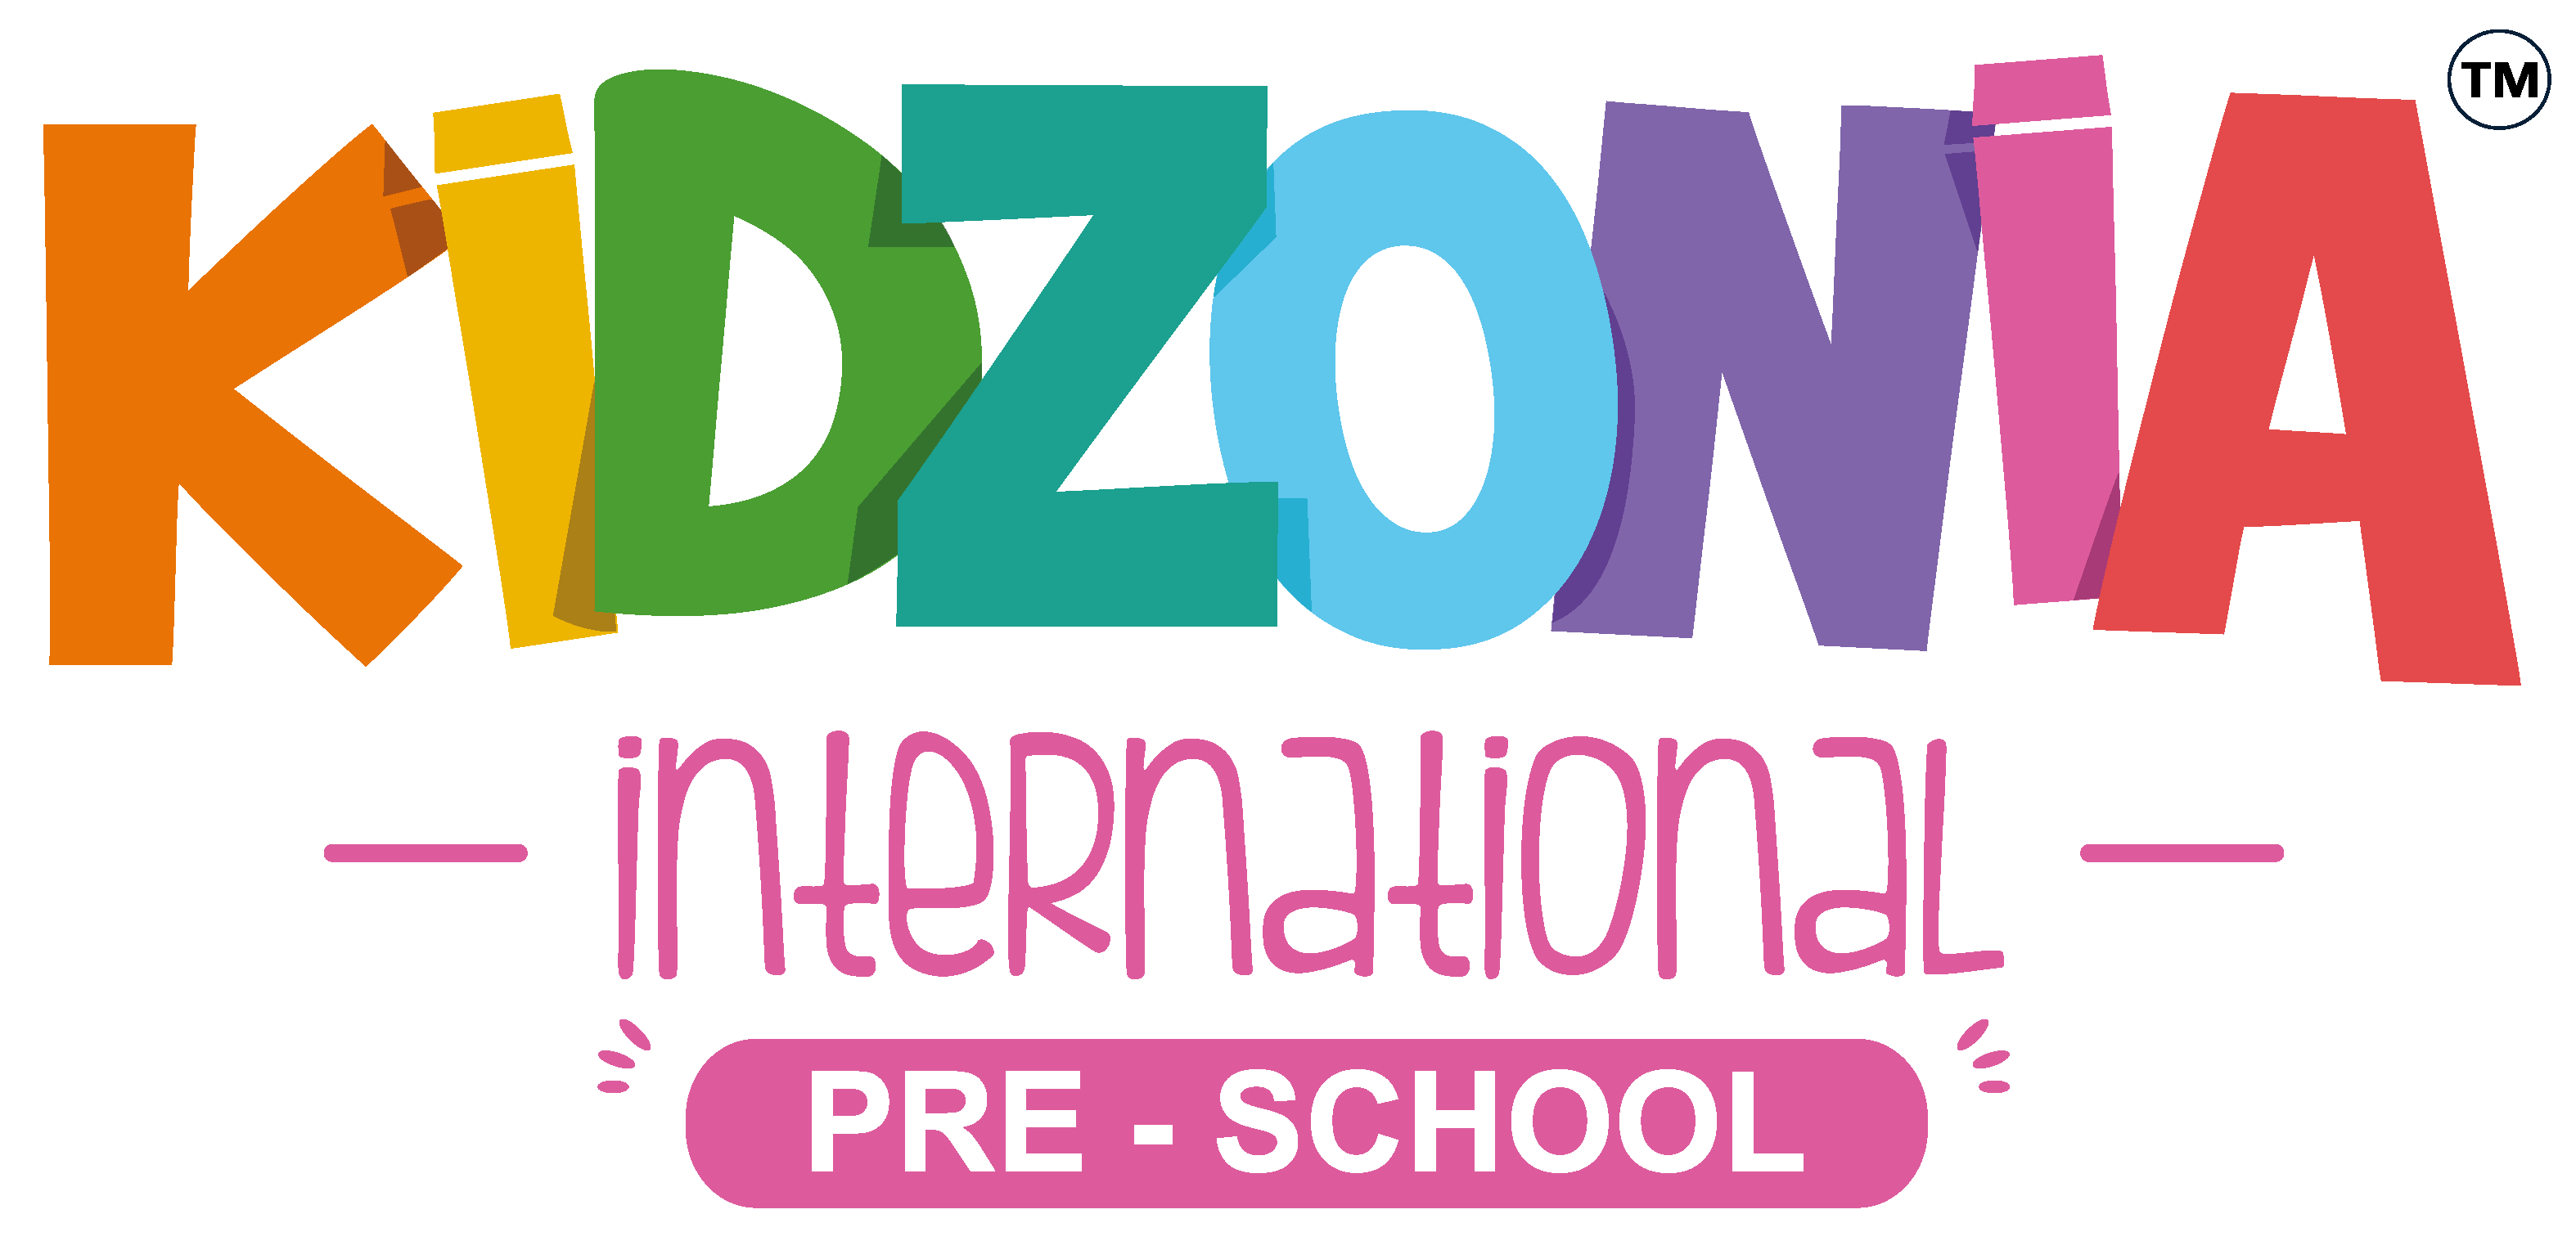 Kidzonia International Preschool